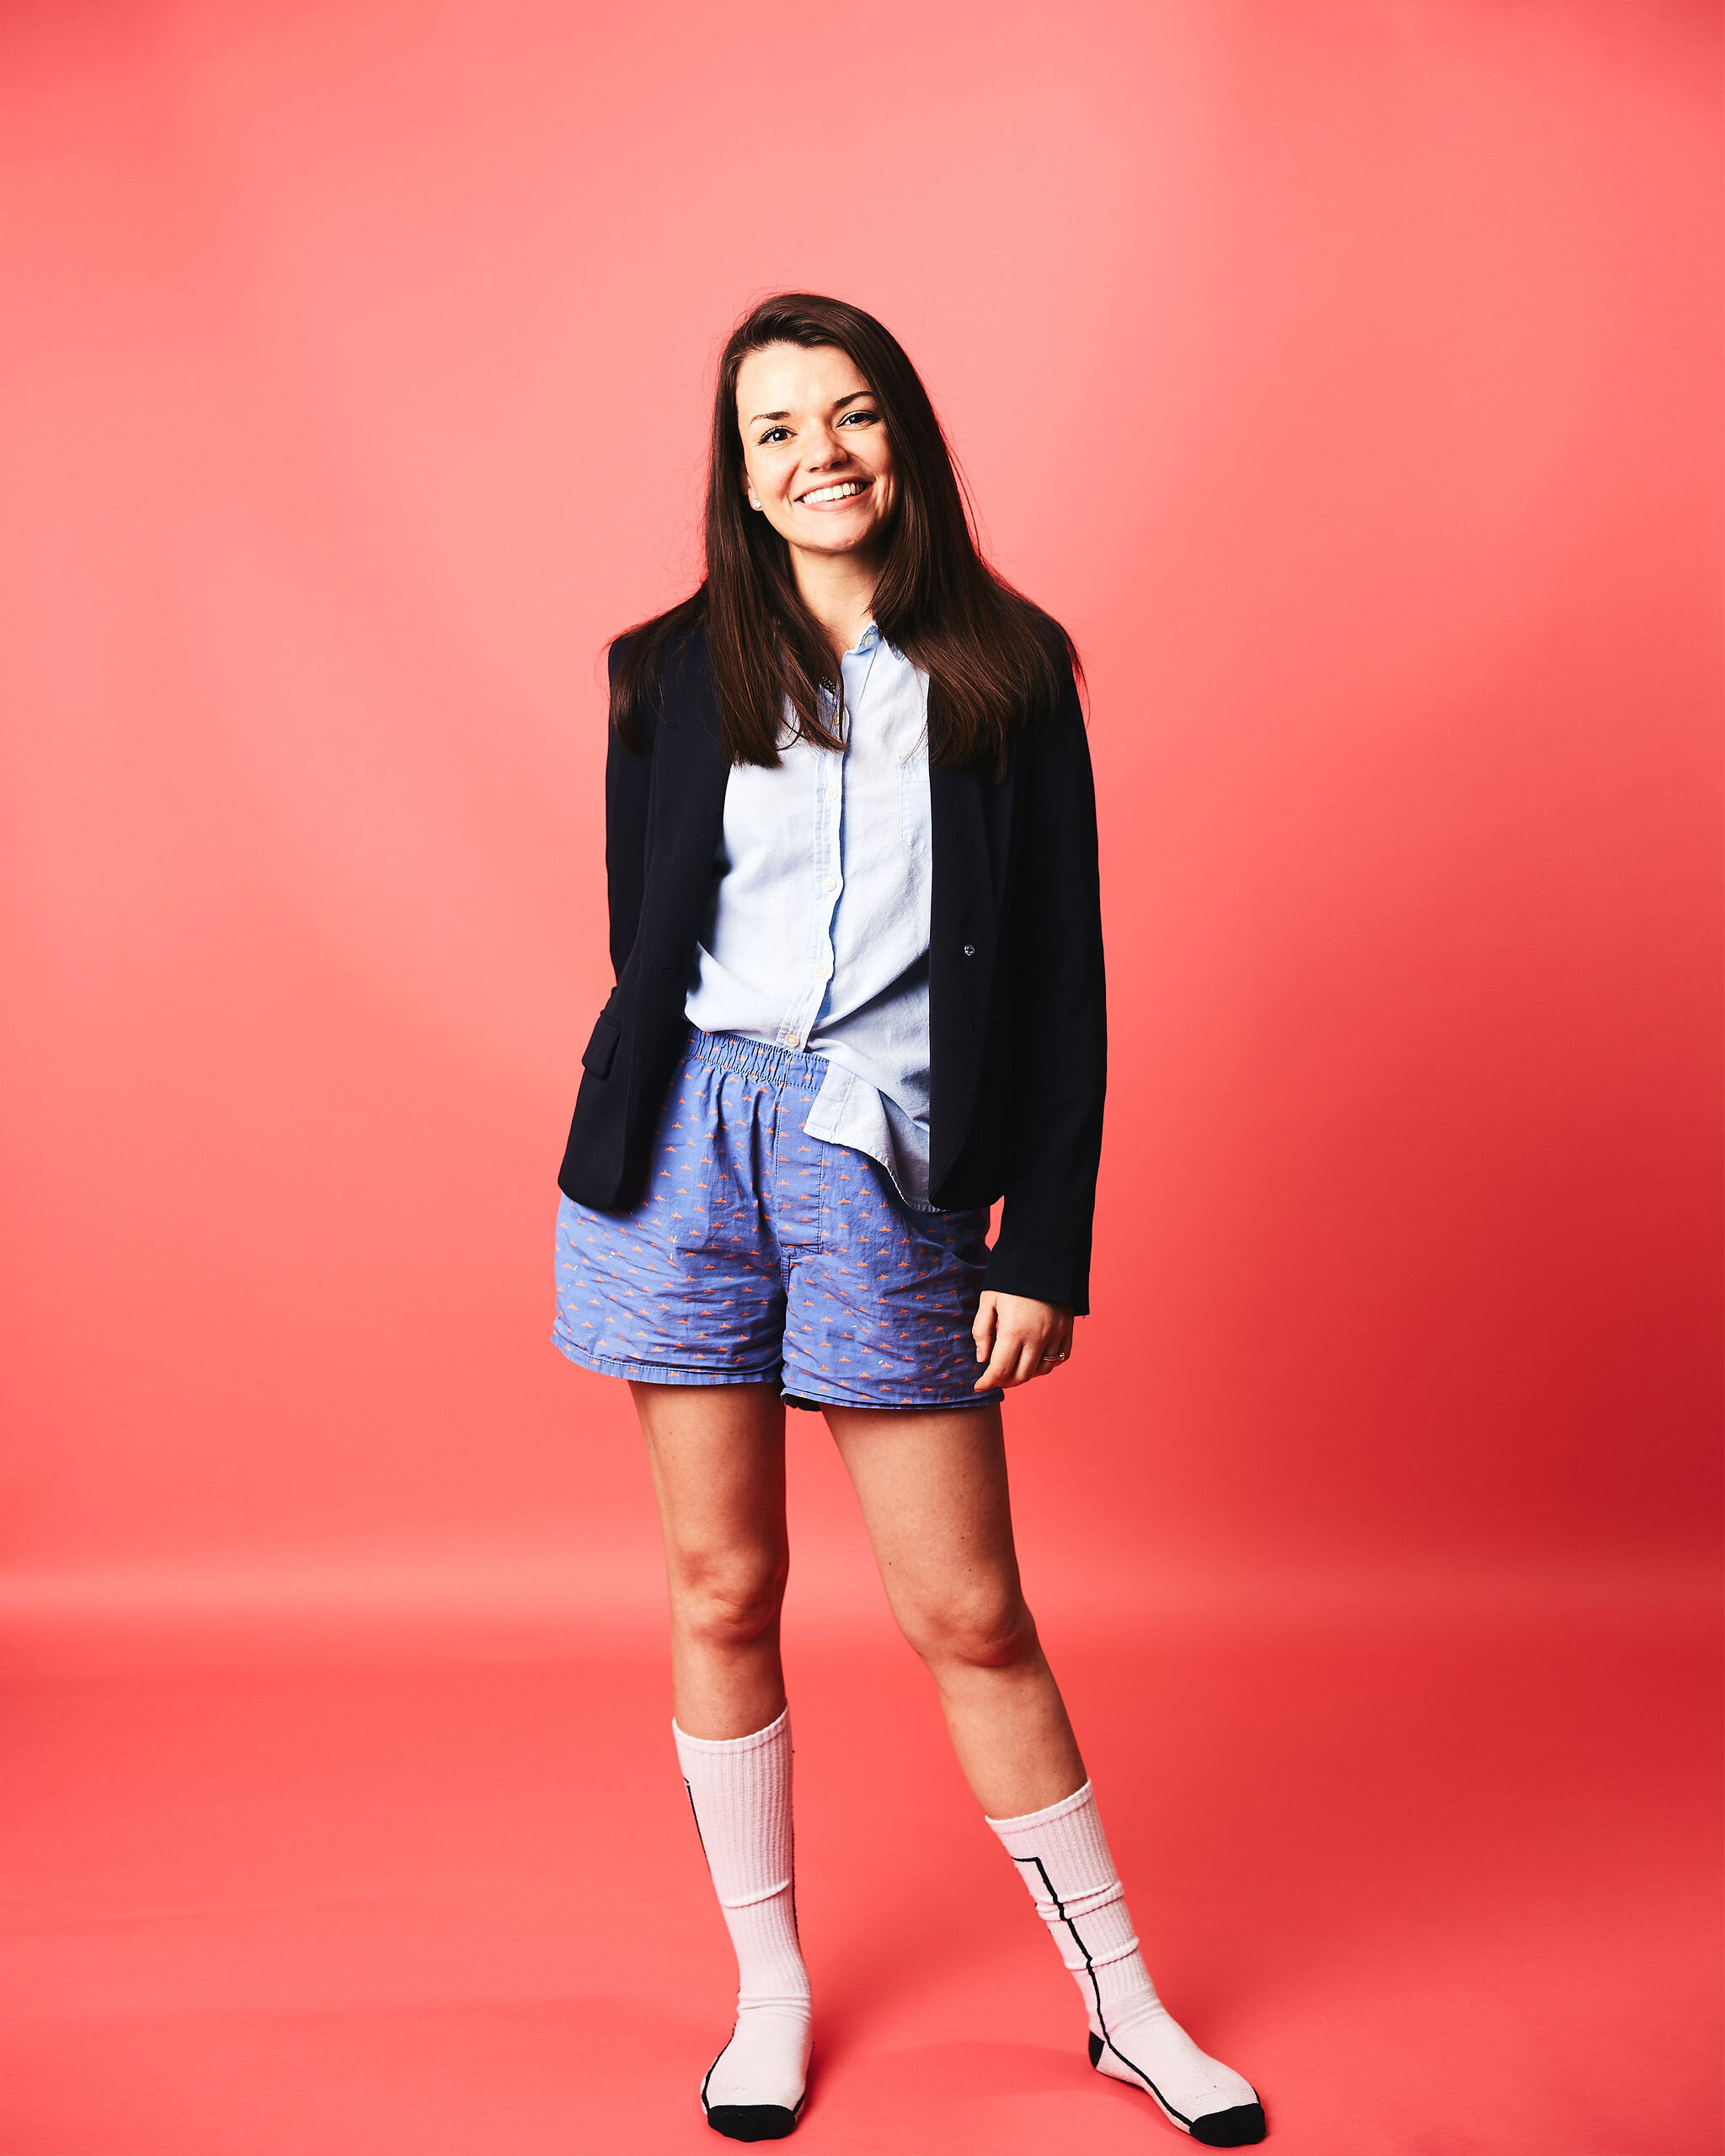 Meet Kate Blosser // COVIDwear